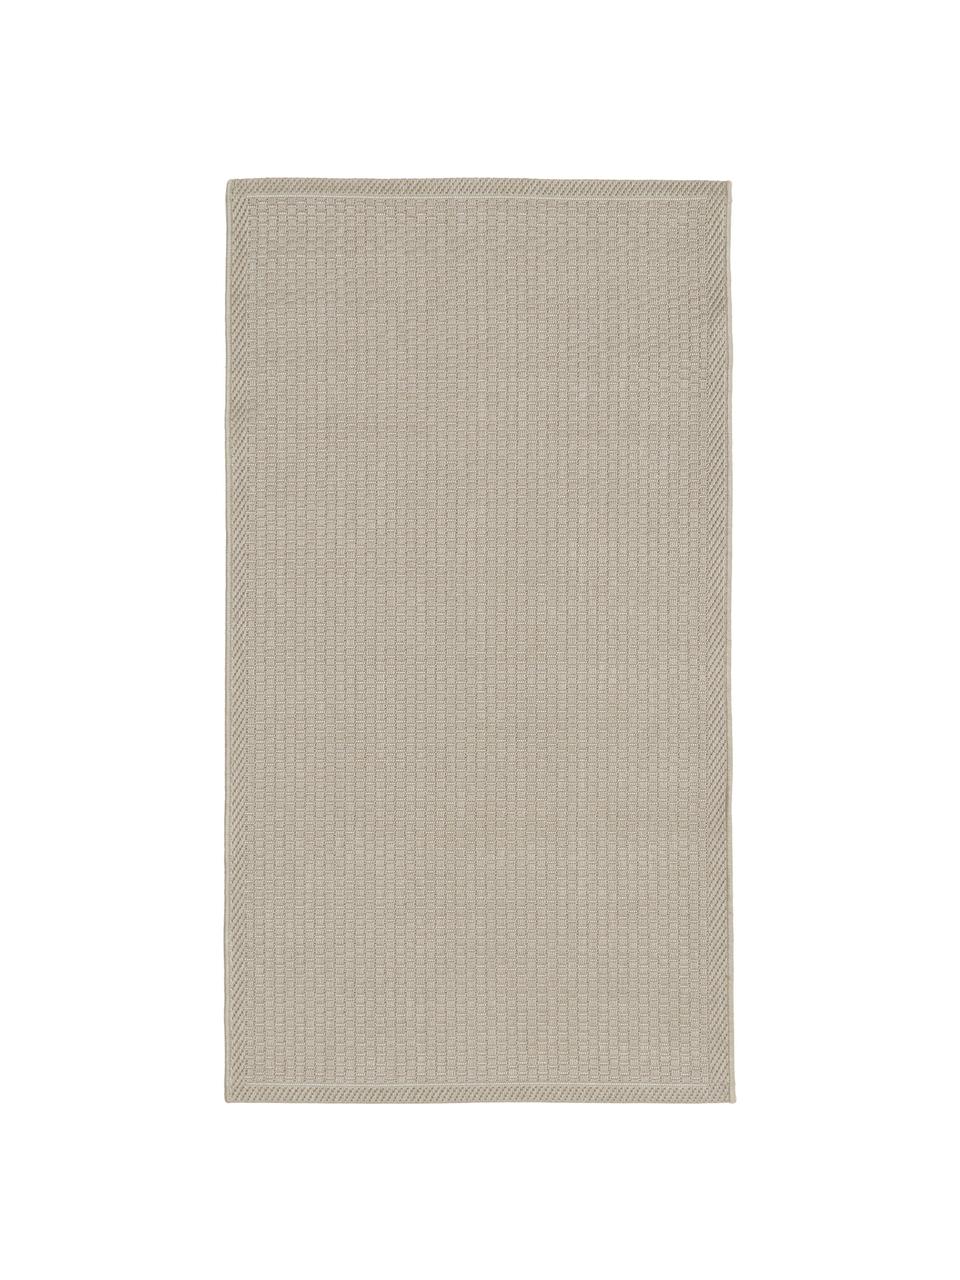 Tappeto da interno-esterno color beige Toronto, 100% polipropilene, Beige, Larg. 80 x Lung. 150 cm (taglia XS)